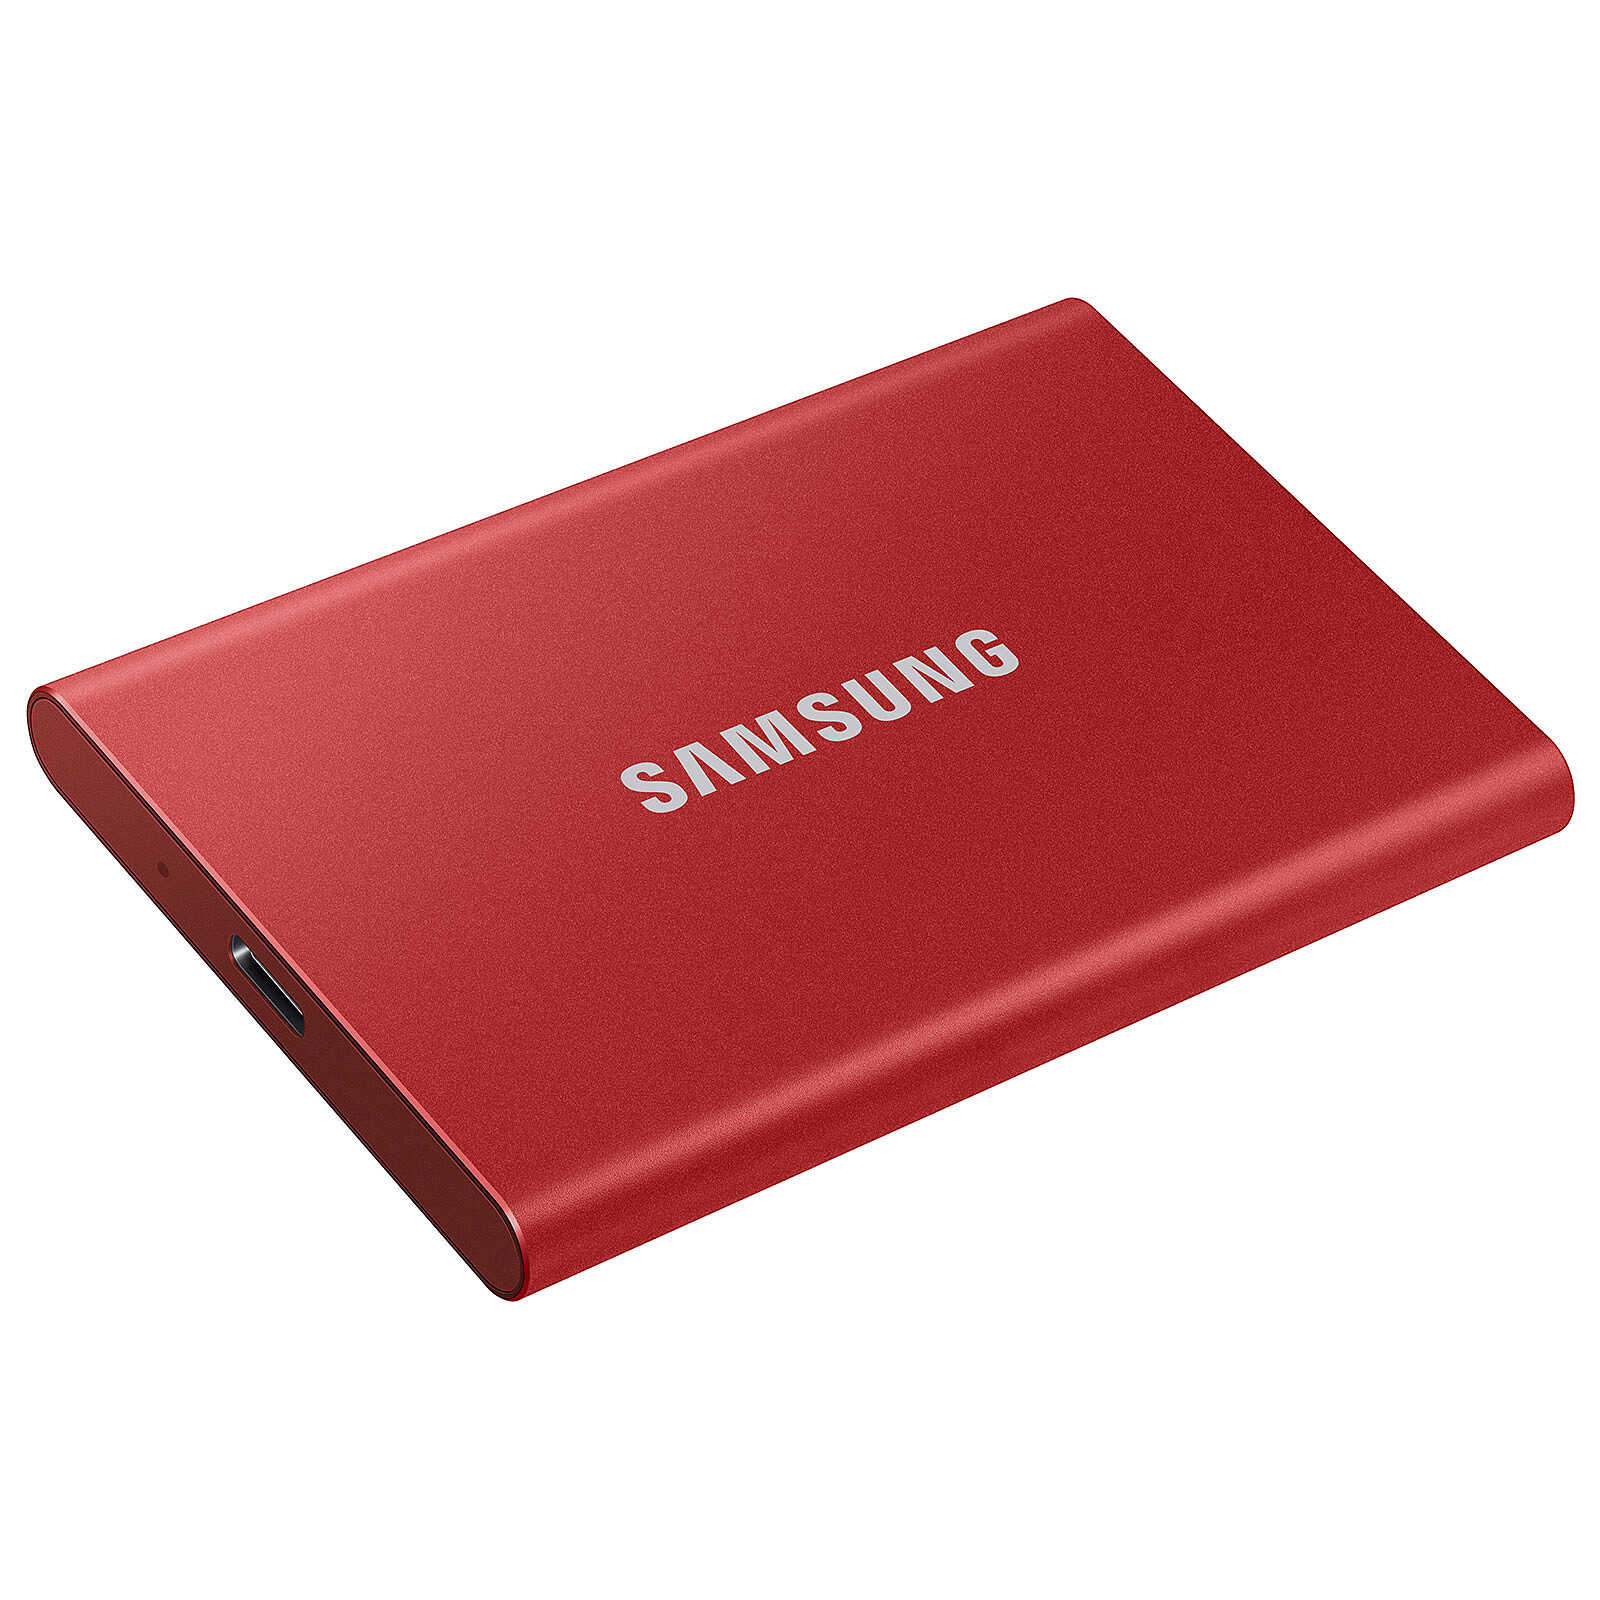 Belle offre à saisir sur ce SSD Samsung Portable T7 1 To avec une